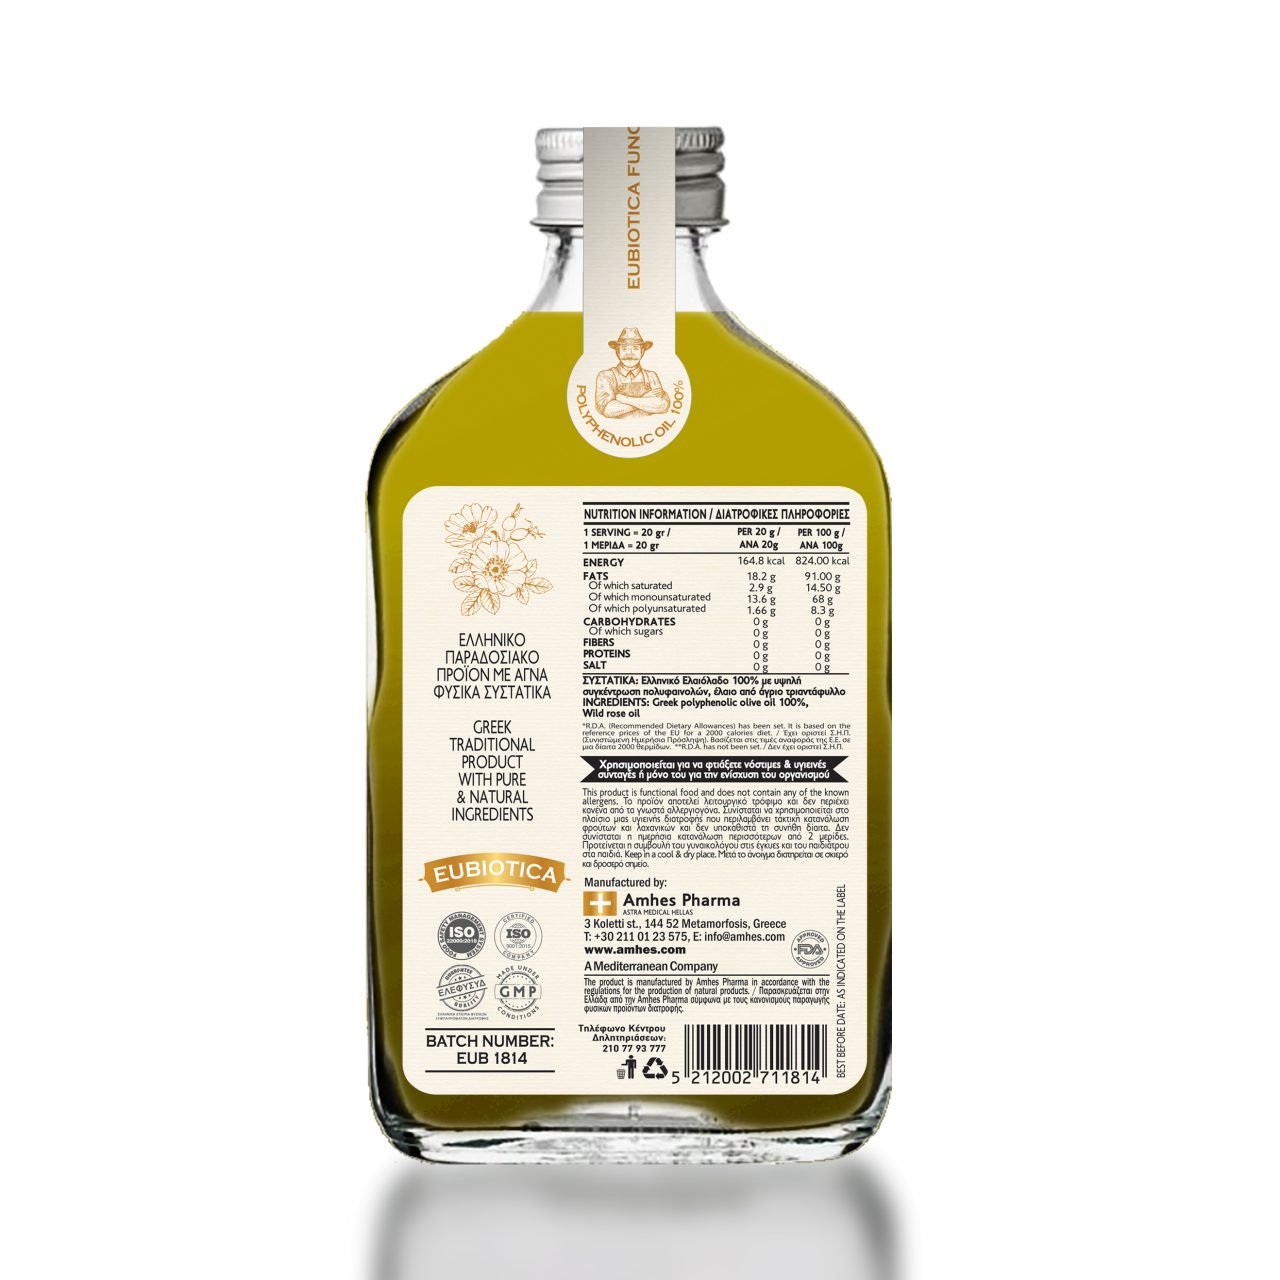 EUBIOTICA olive oil Wild Rose - Amhes Pharma